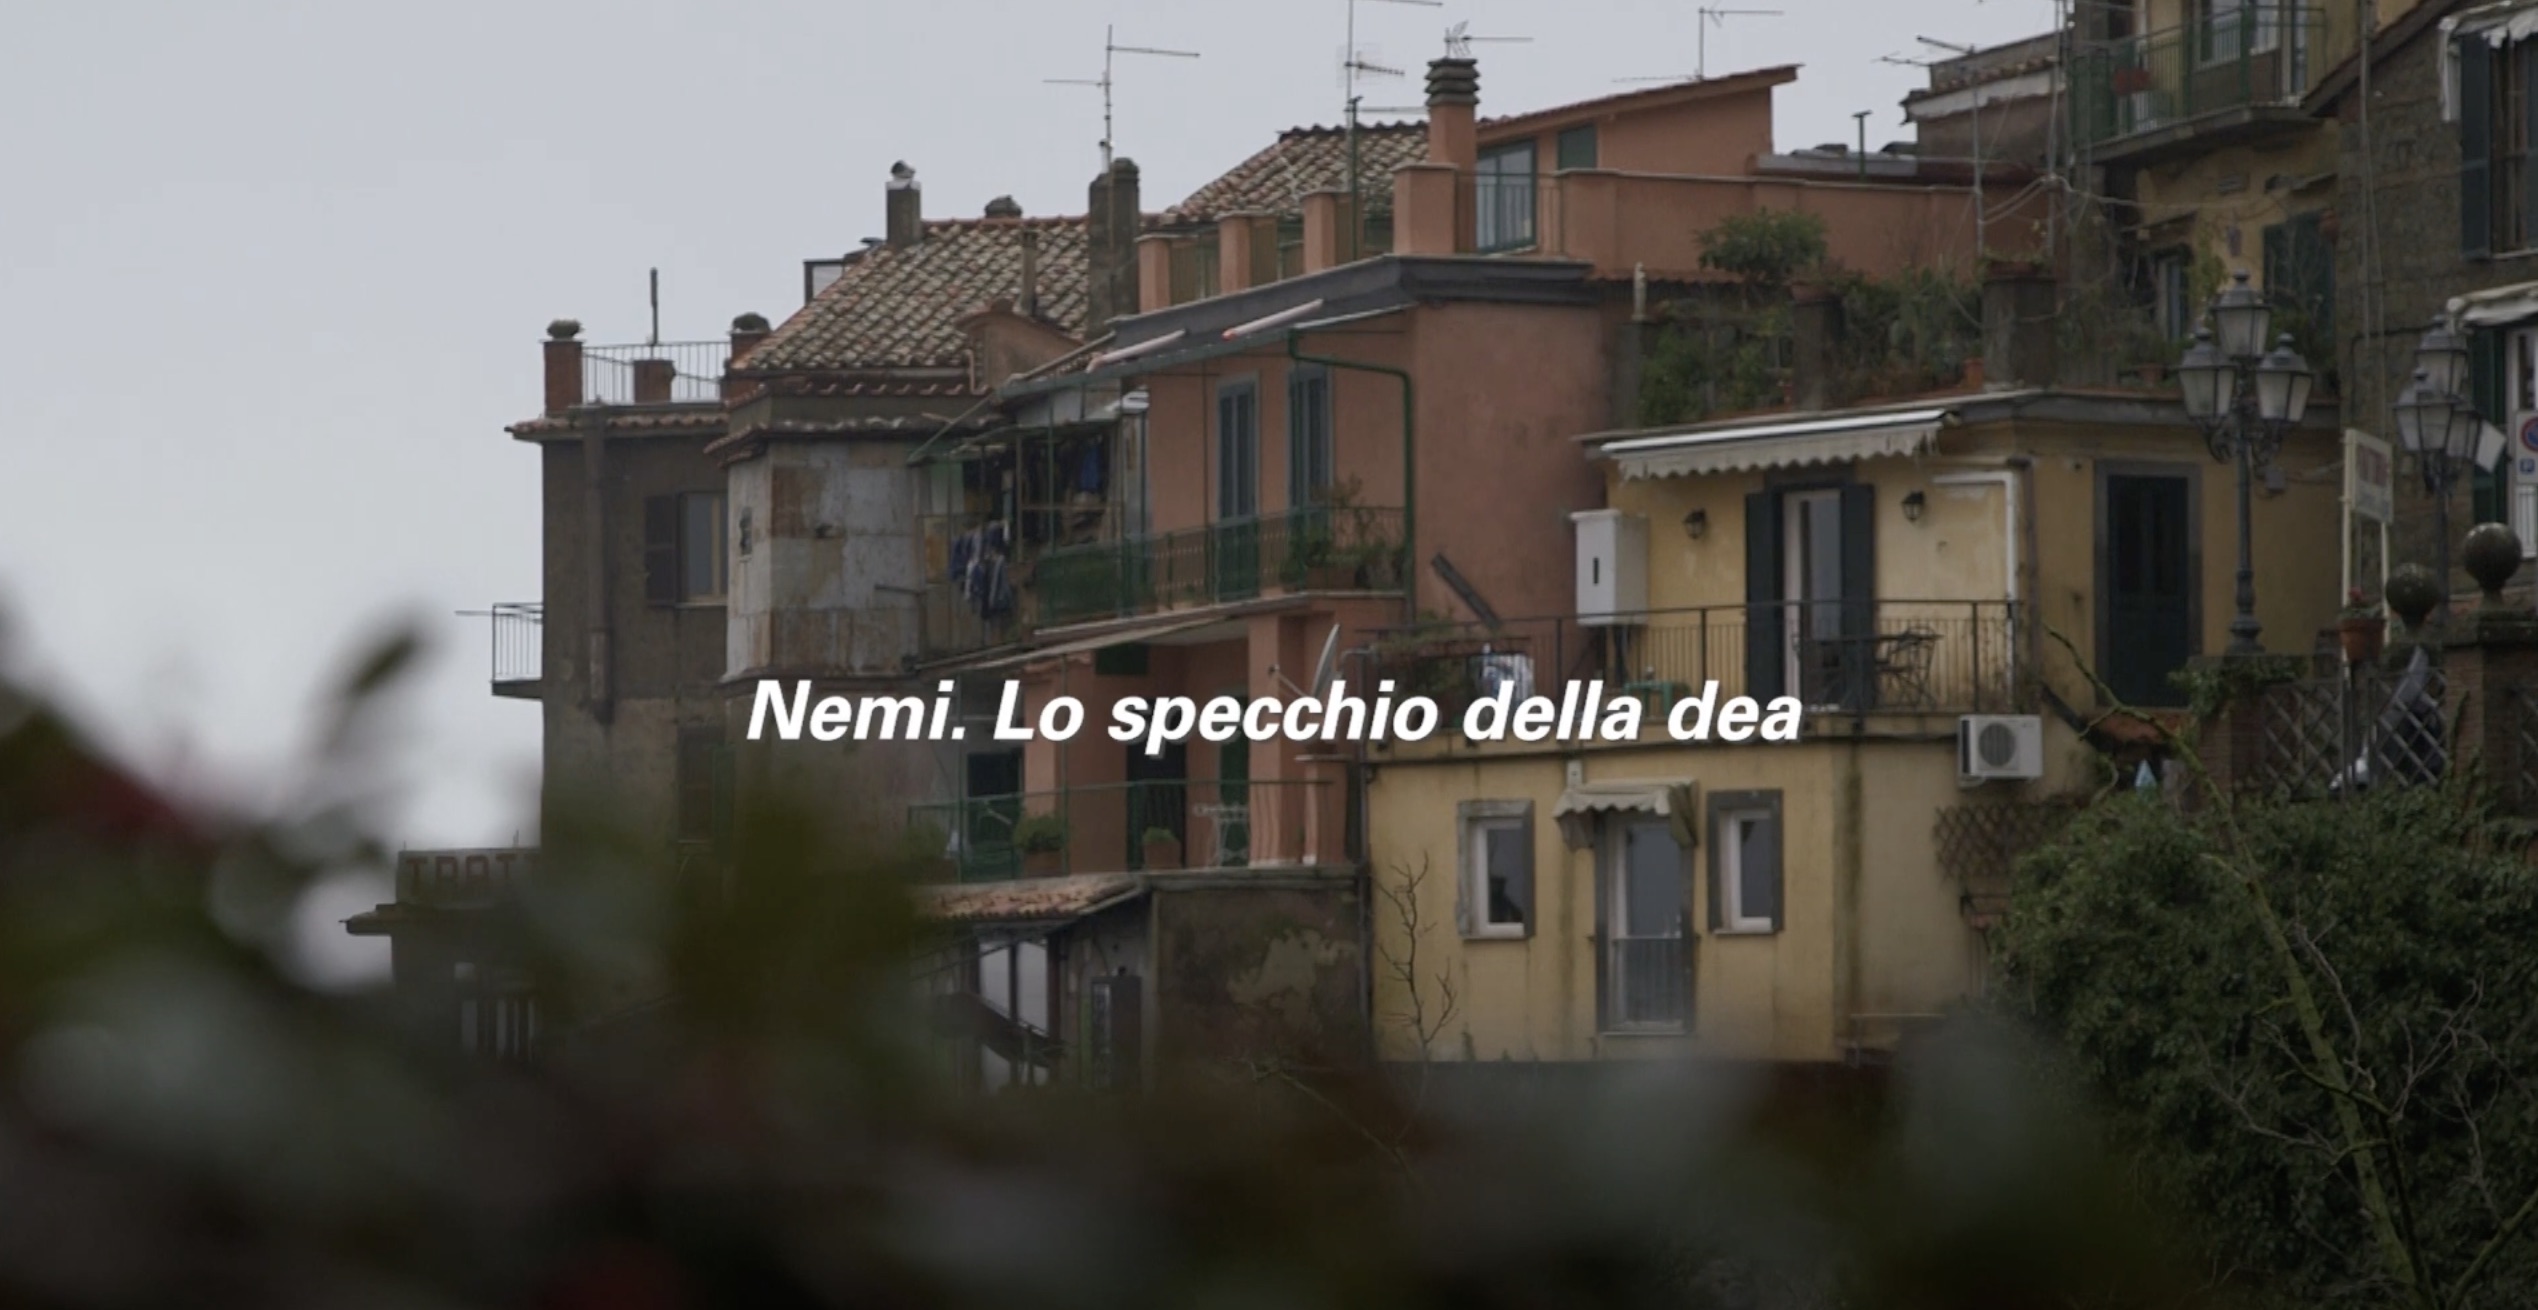 video.nemi-spacchio-dea.cover_.jpeg